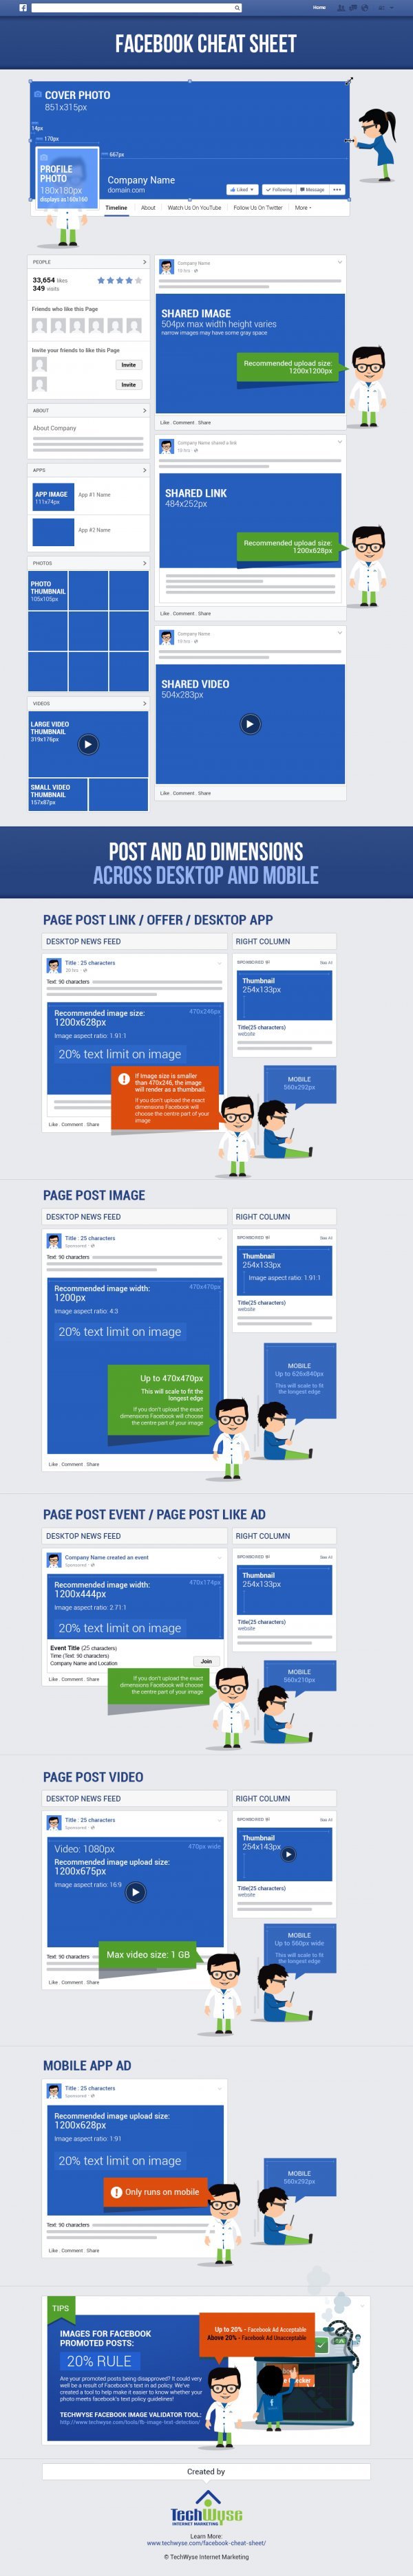 Facebook Cheat Sheet Screenshot/Tech Wyse